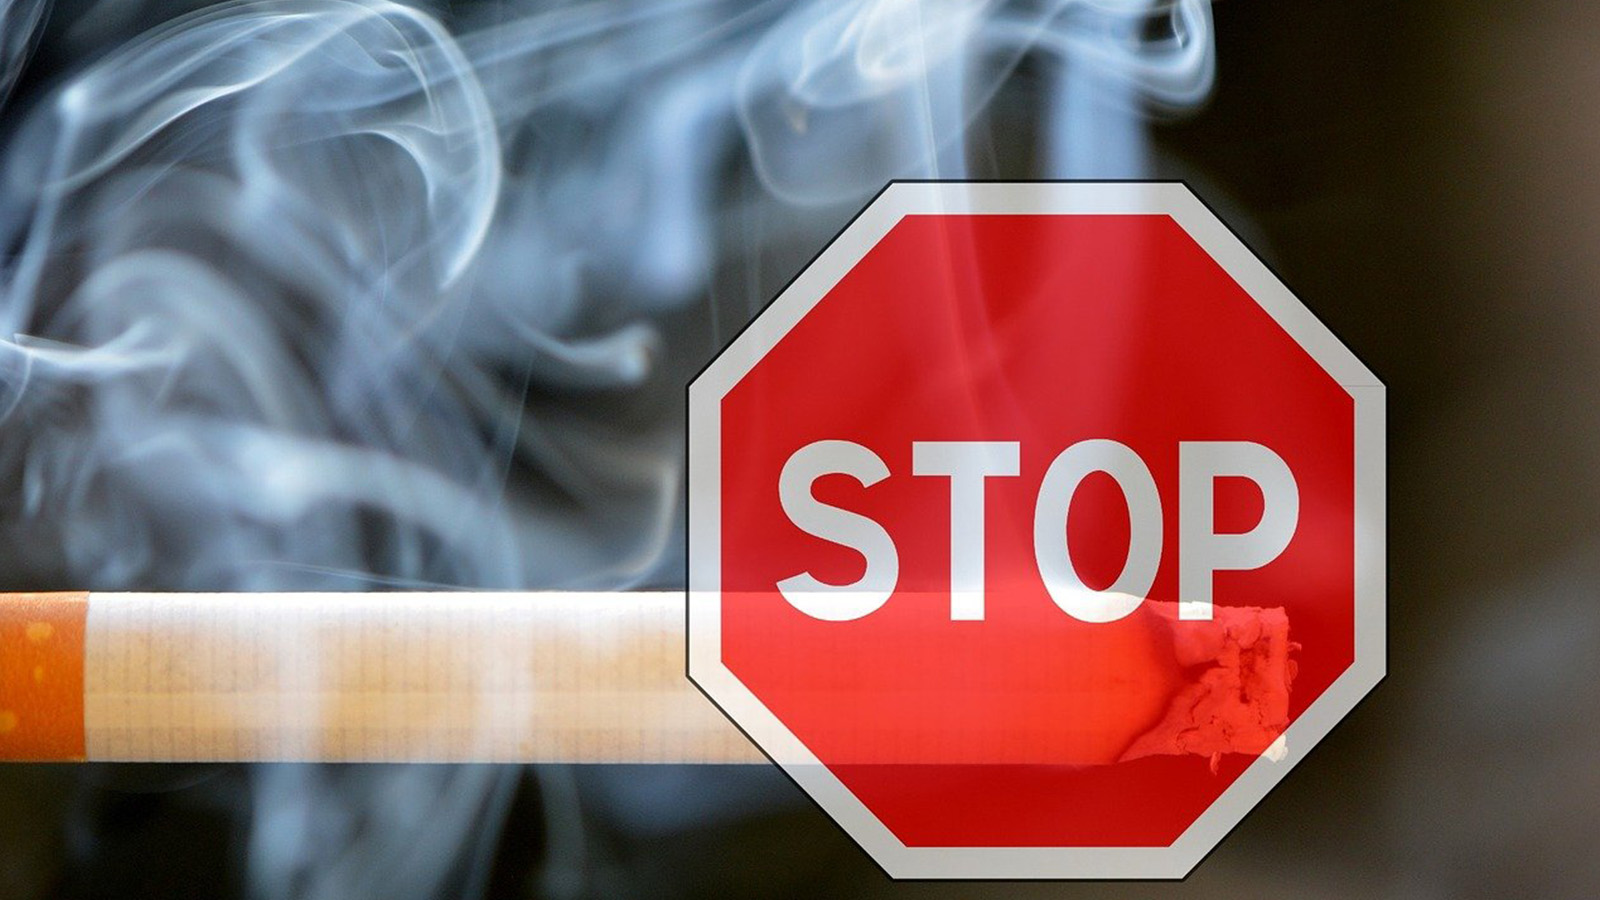 Affidea: Τι συμβαίνει στο σώμα μας όταν σταματήσουμε το κάπνισμα